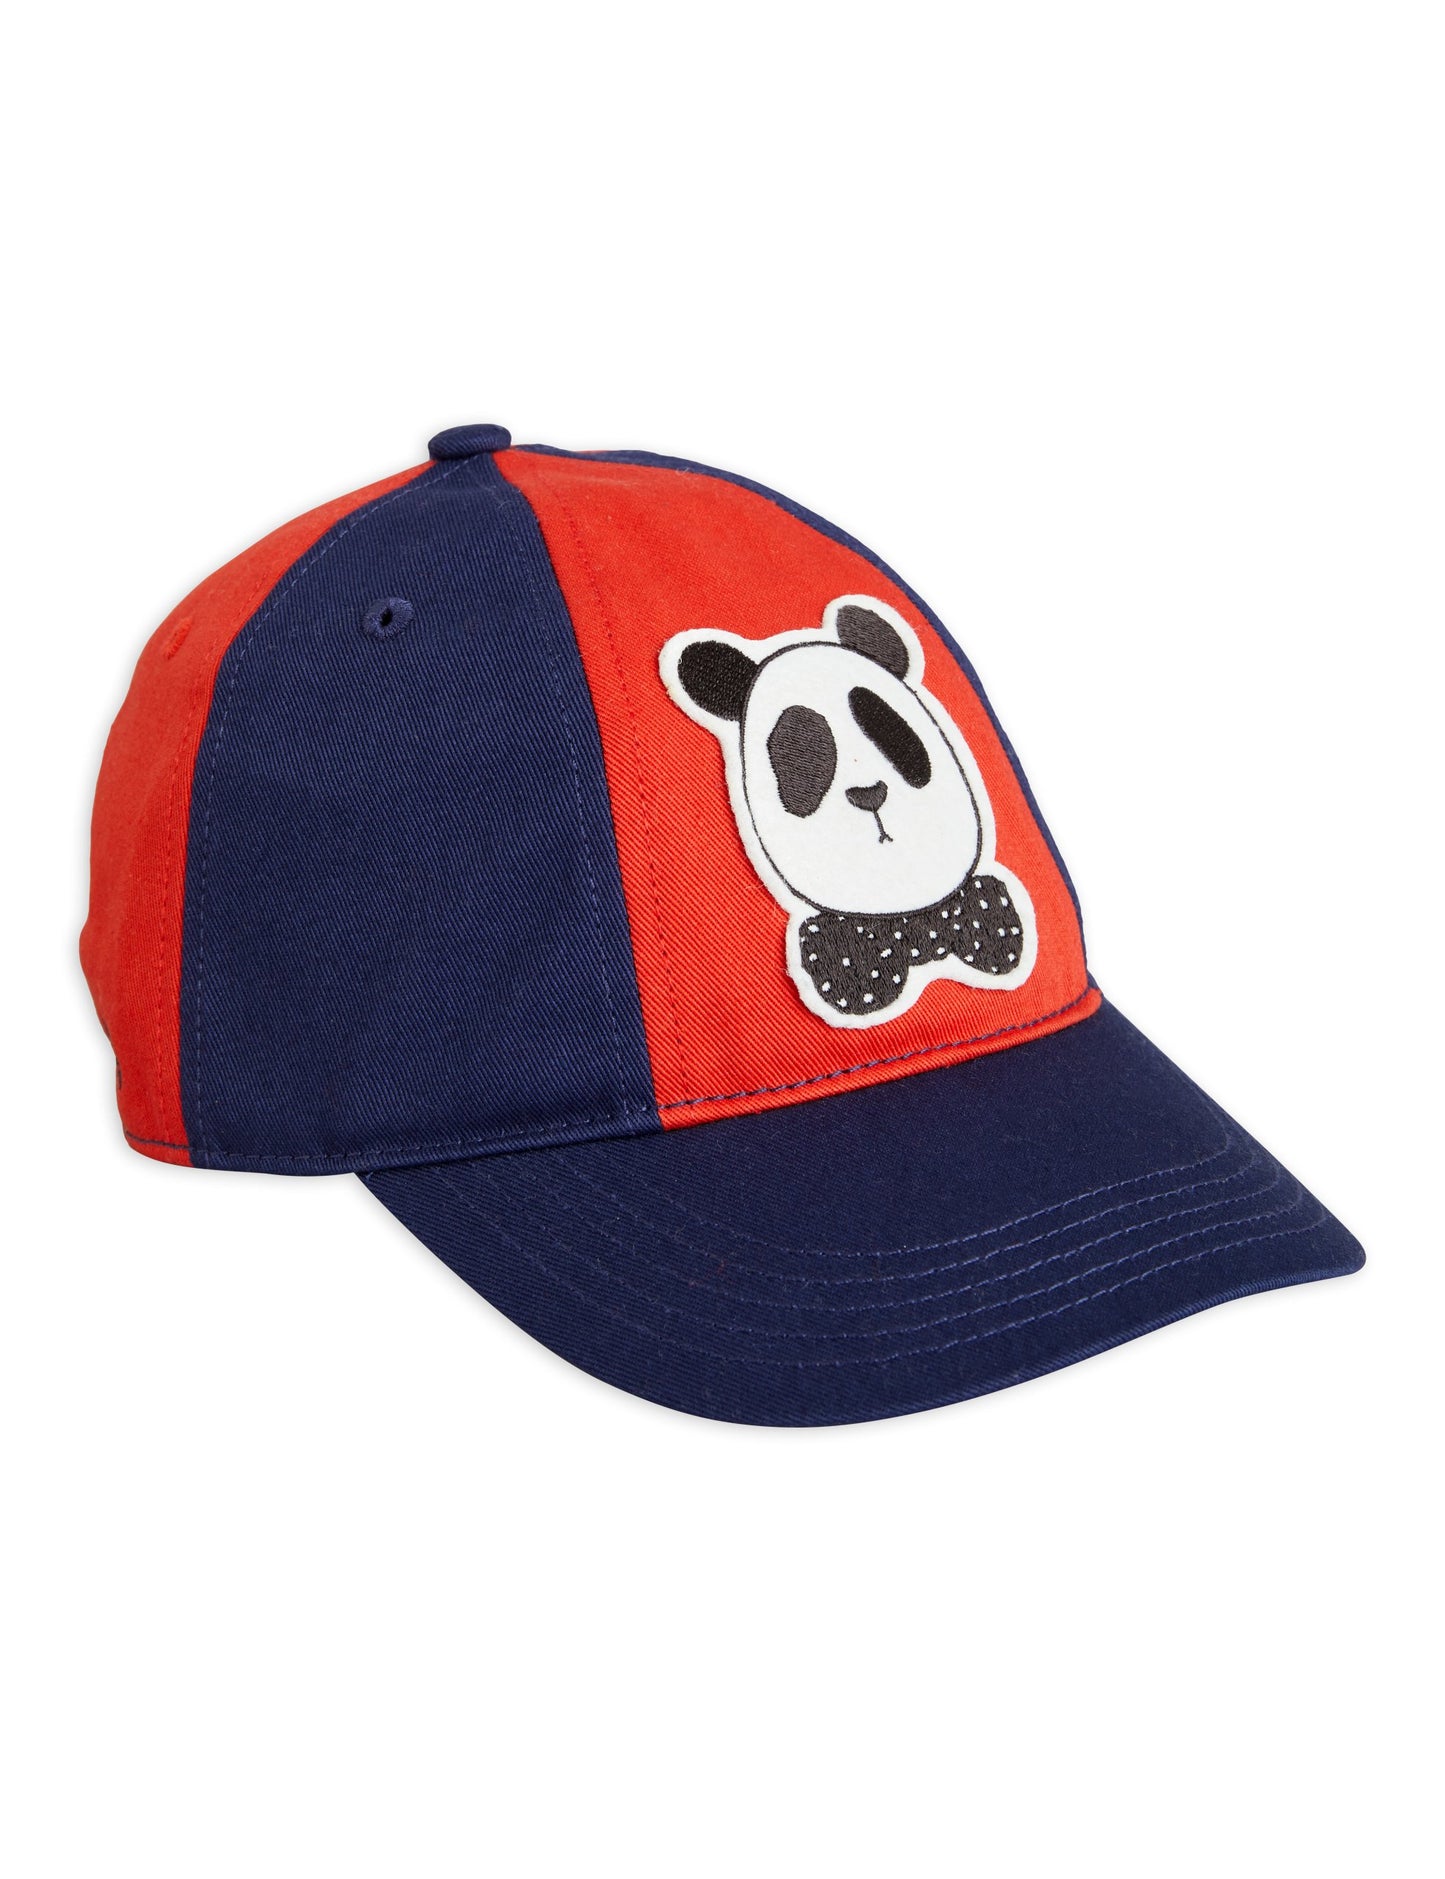 Panda Cap Navy